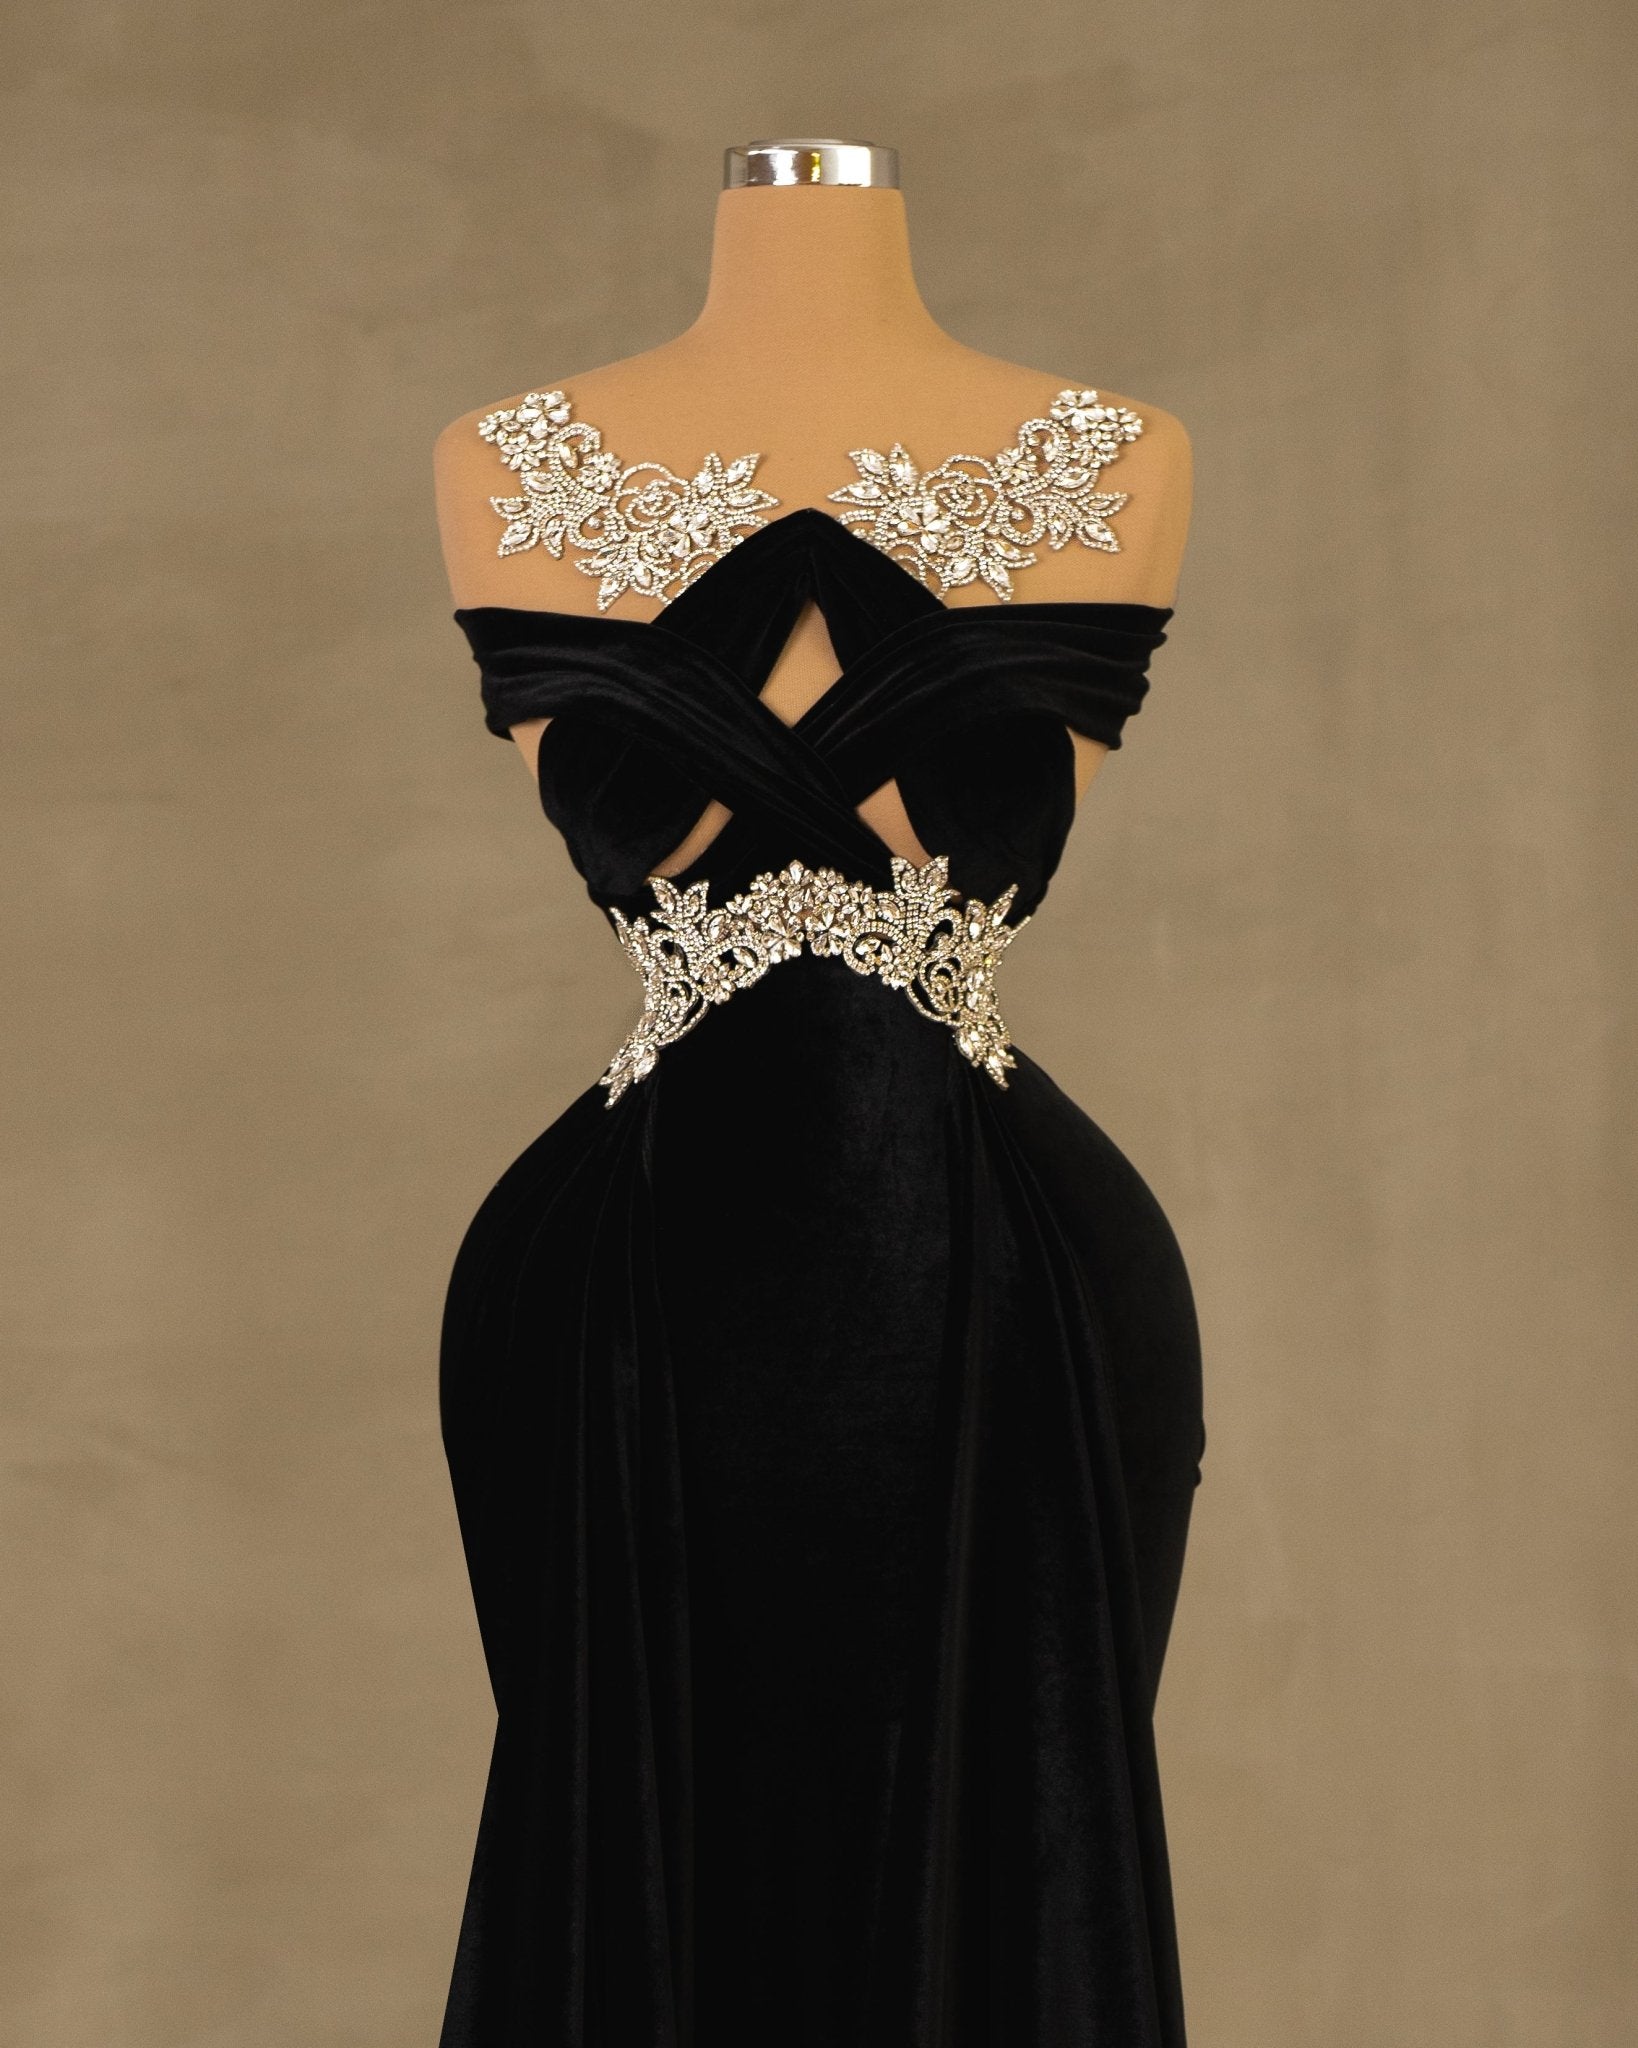 Velvet Dress - Evening Dress with Silver Embellishments – Blini 